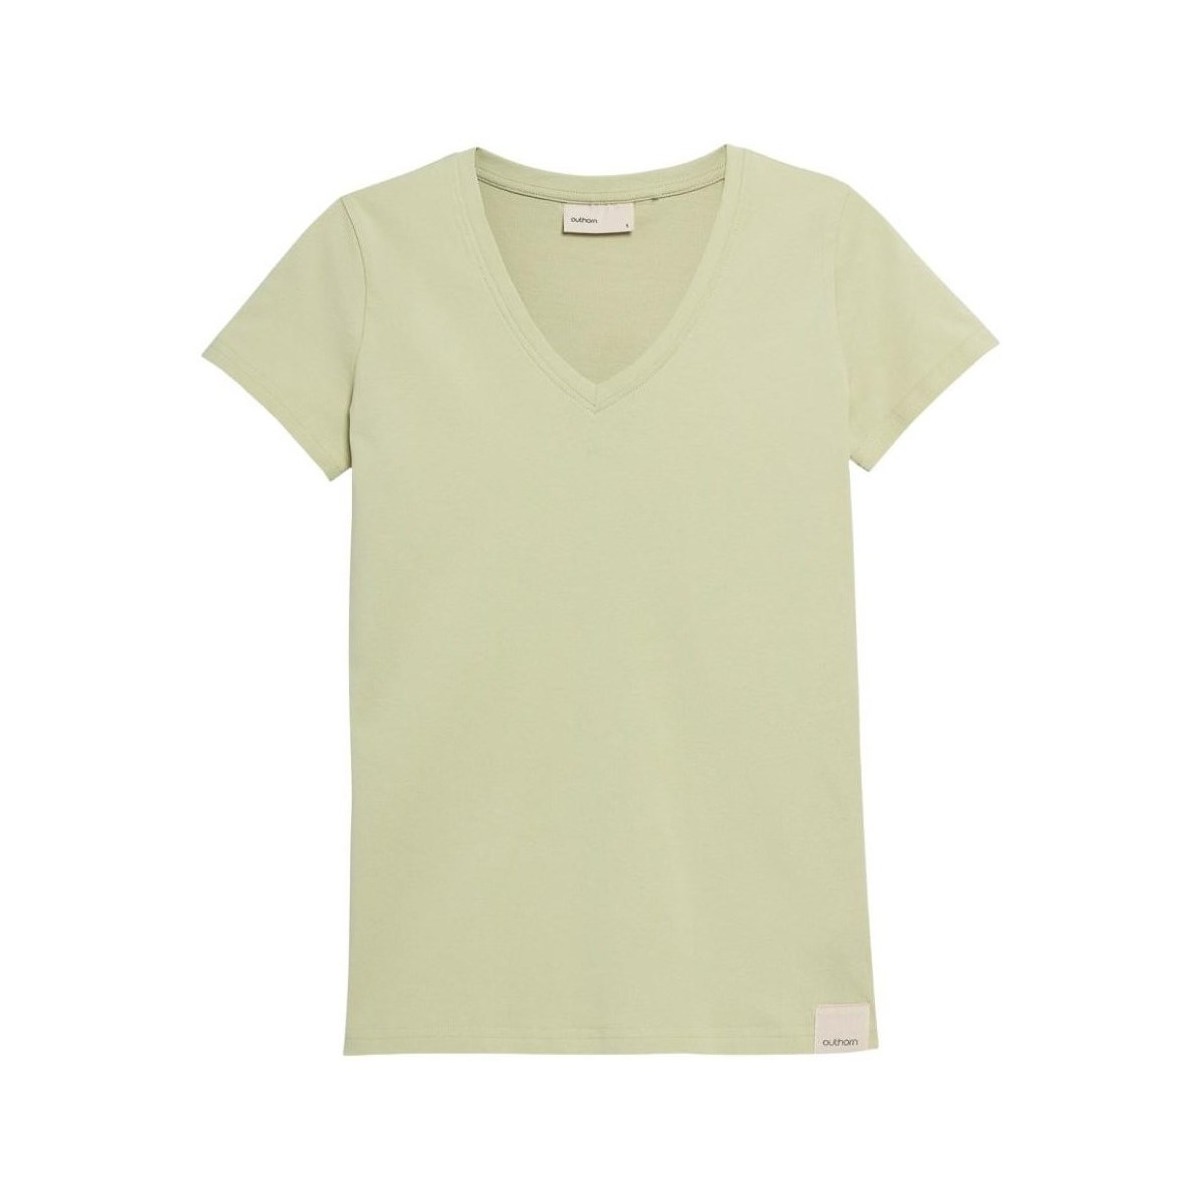 Îmbracaminte Femei Tricouri mânecă scurtă Outhorn TSD601 verde